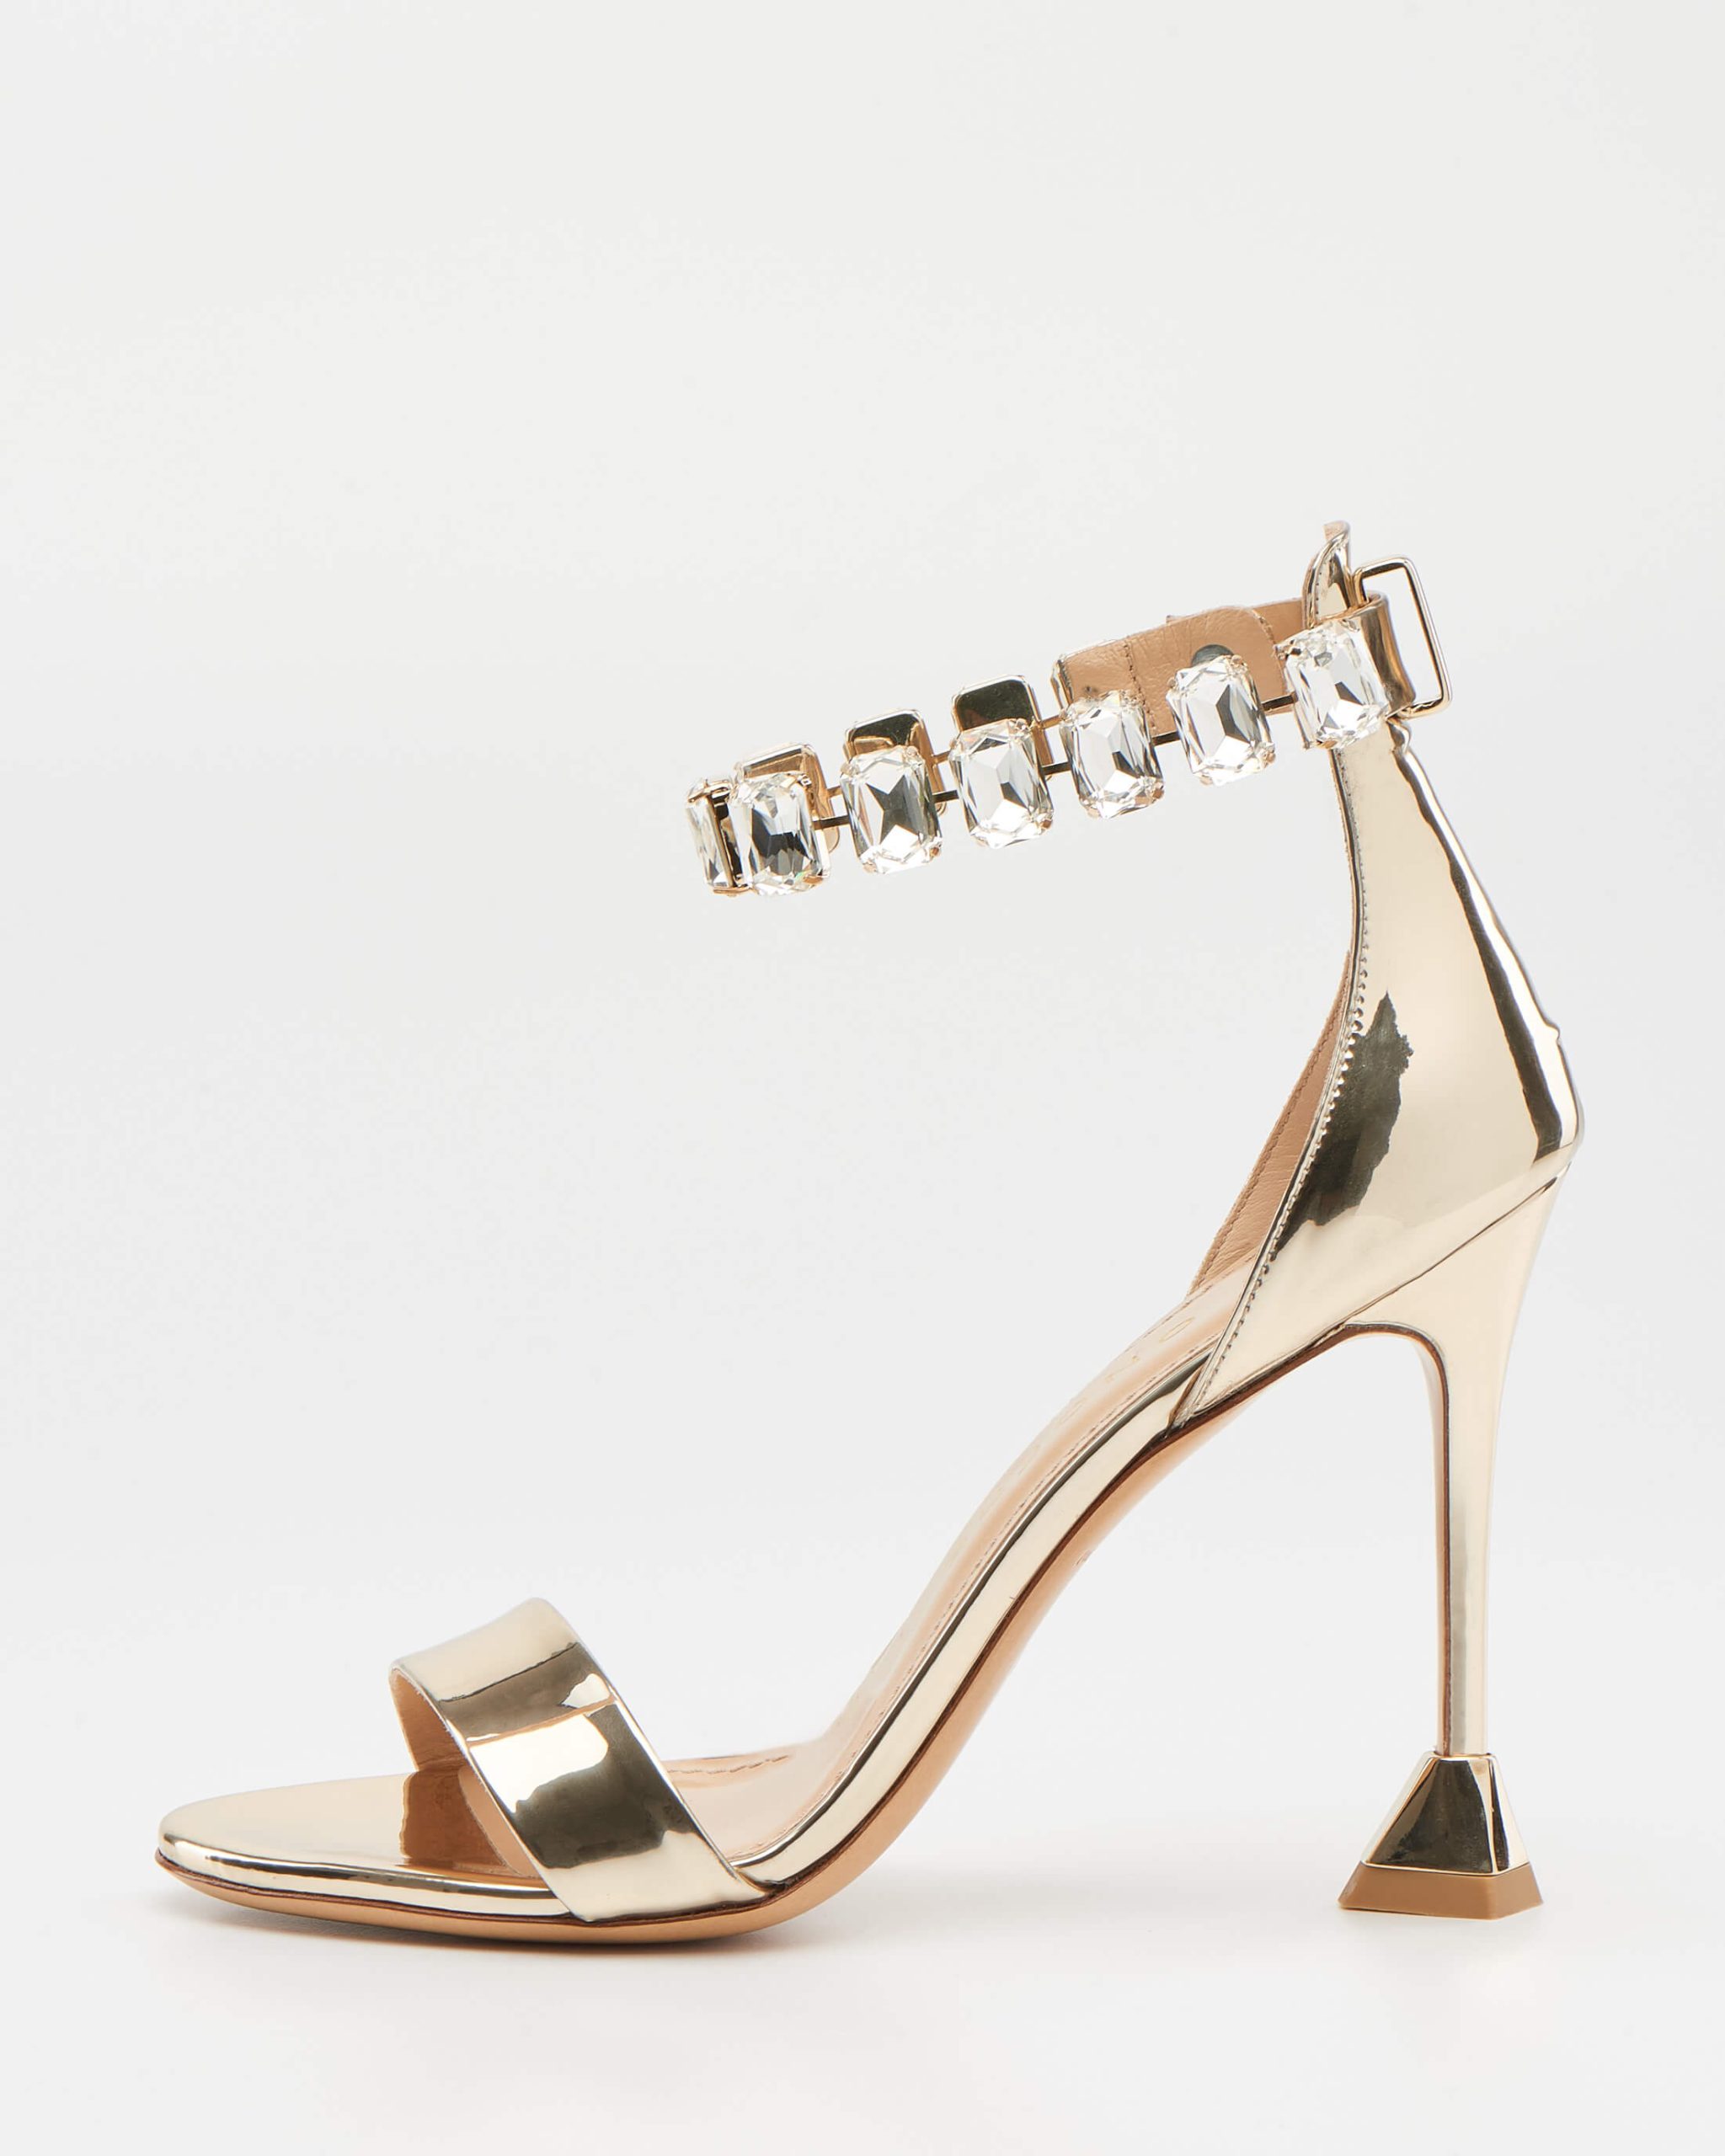 Gold High Heel Sandals 5355 – Pandora-7